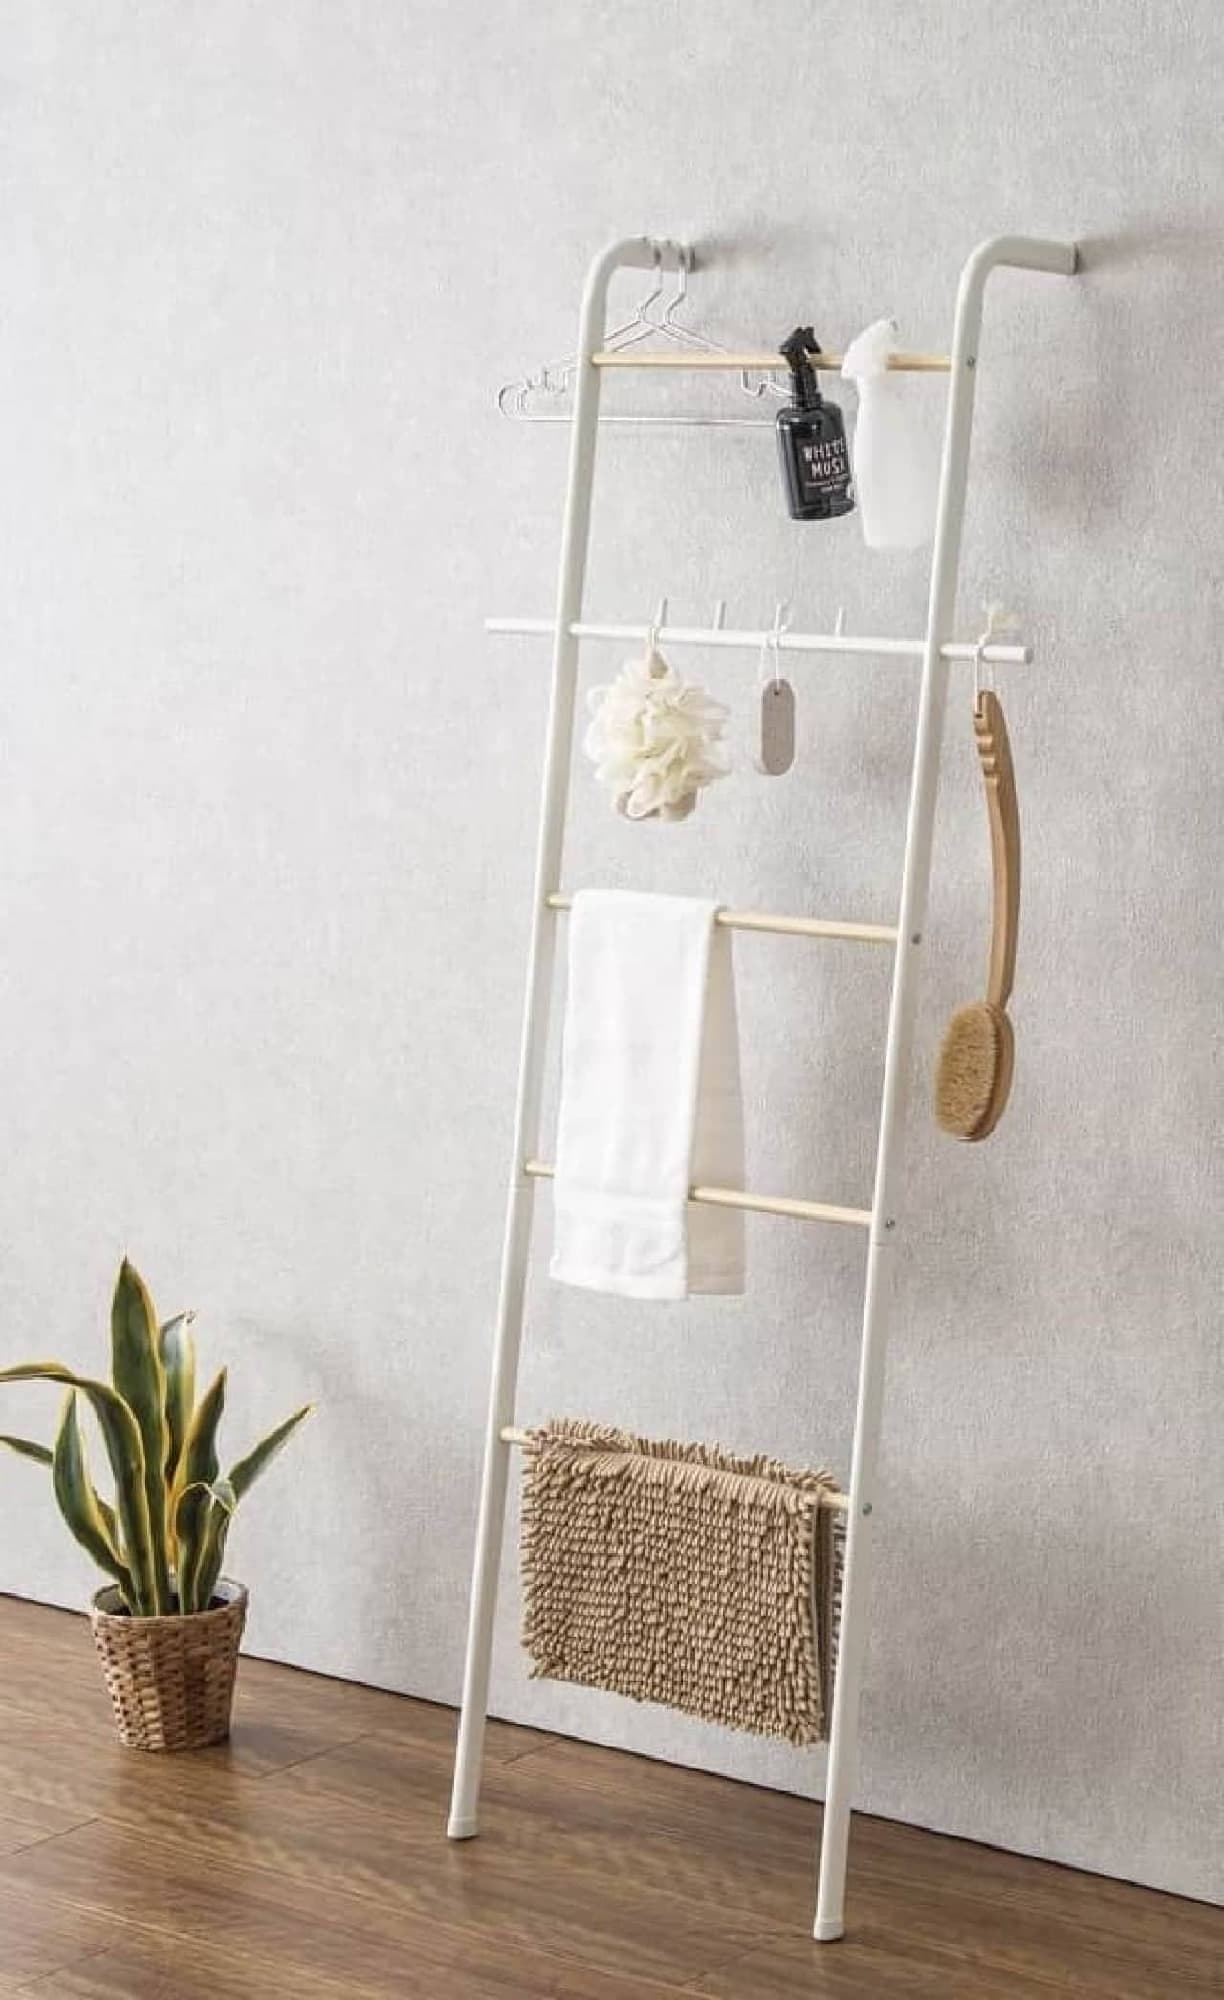 Nitori "ladder hanger